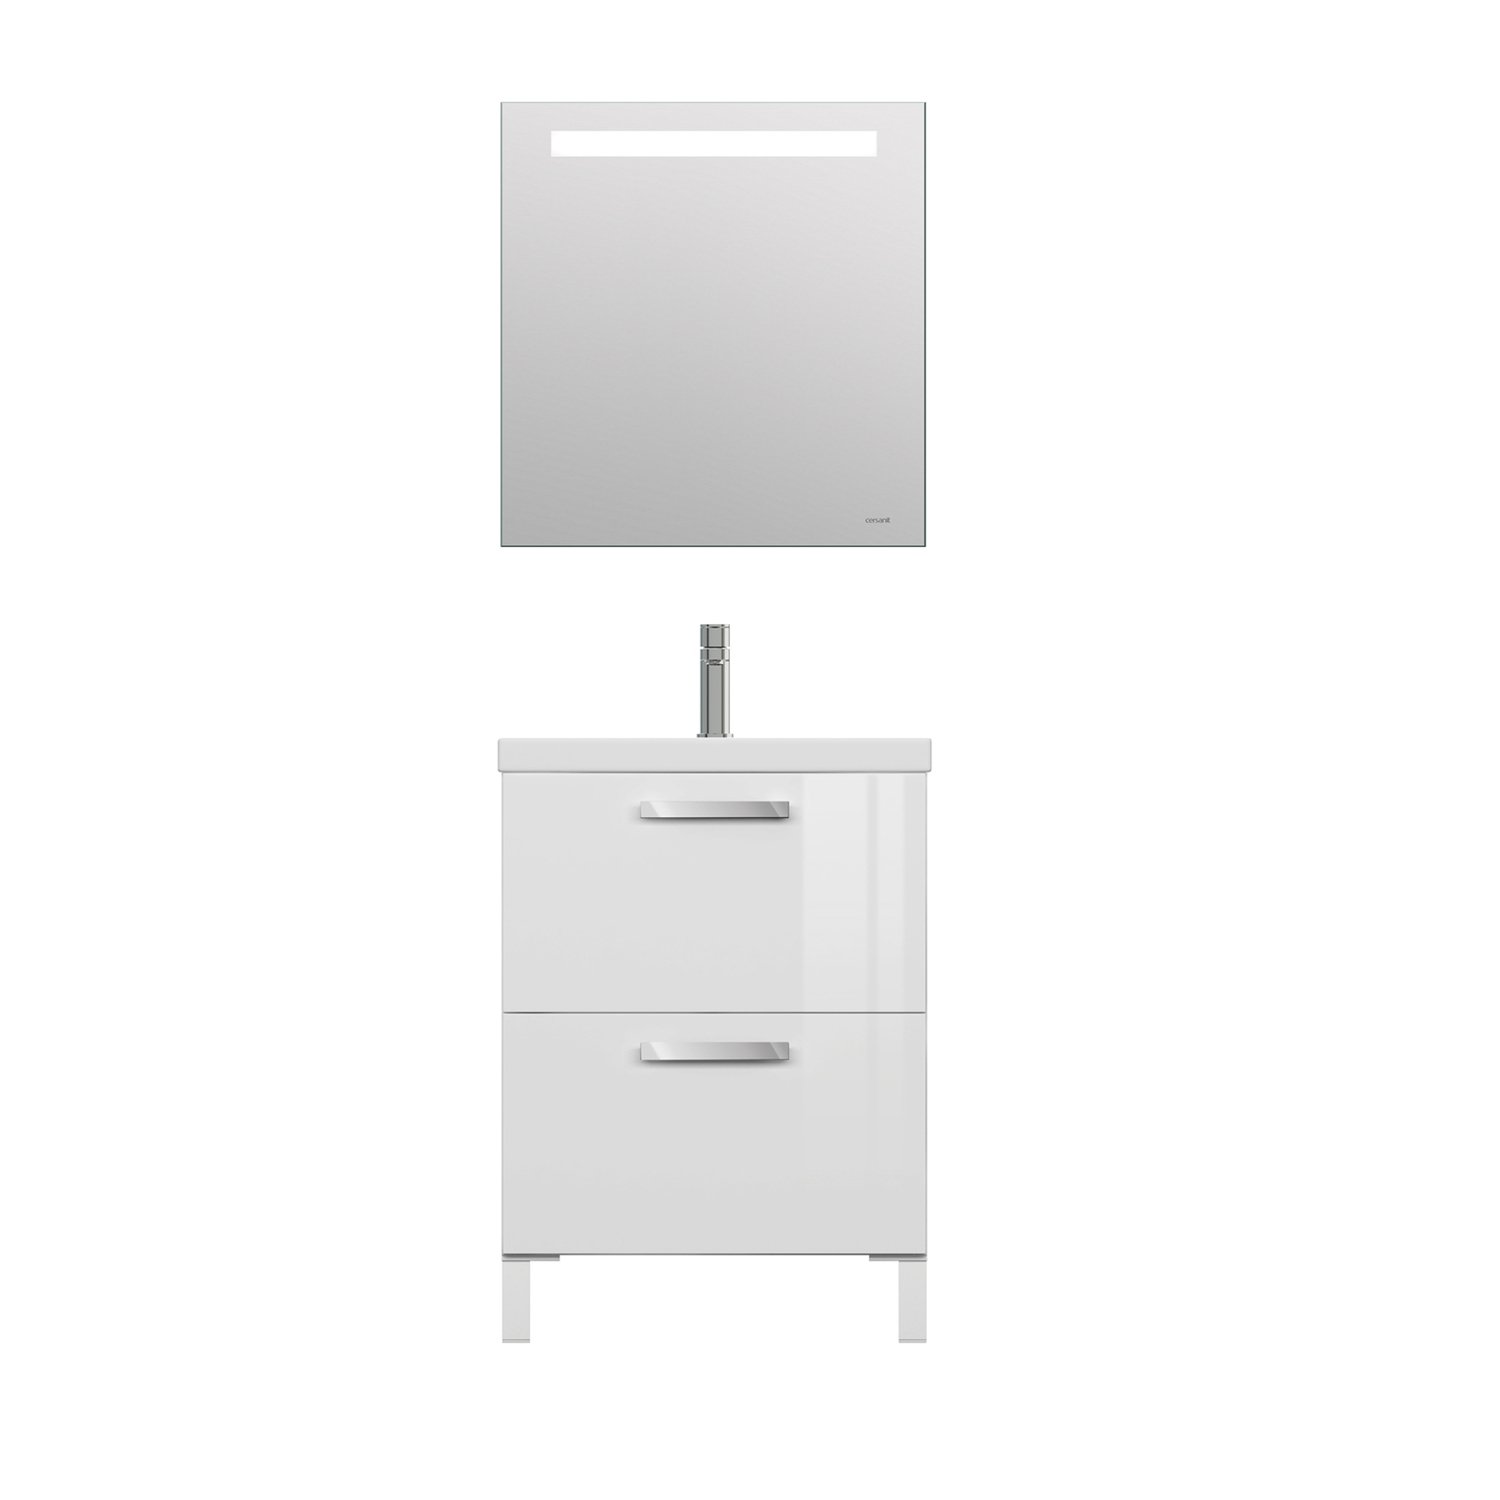 Мебель для ванной Cersanit Melar 60, с раковиной и смесителем, цвет белый